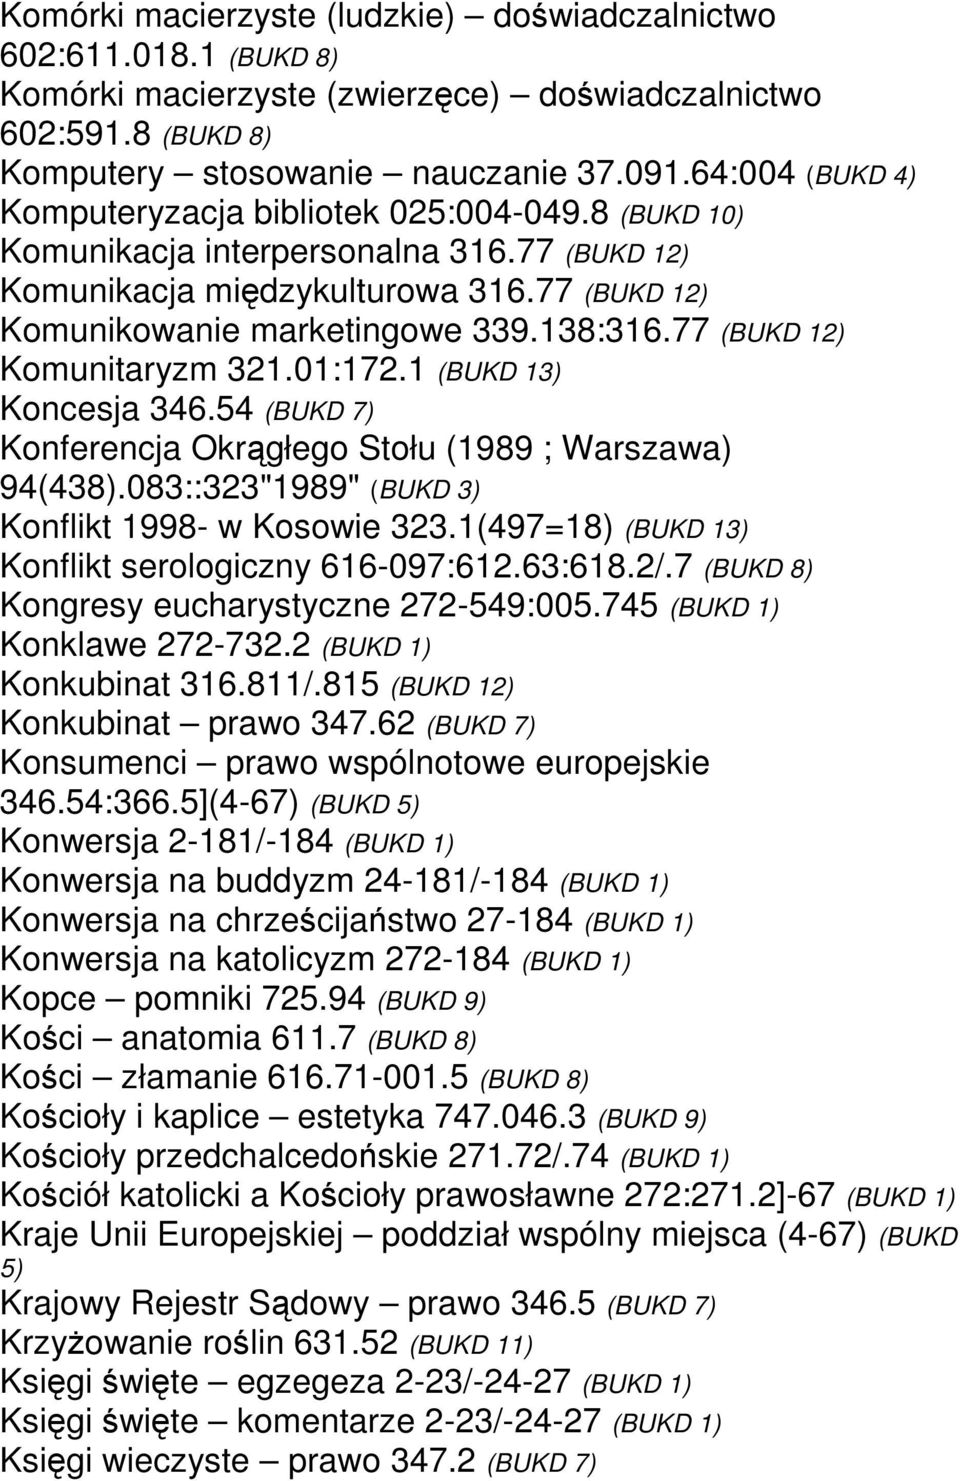 77 (BUKD 12) Komunitaryzm 321.01:172.1 (BUKD 13) Koncesja 346.54 (BUKD 7) Konferencja Okrągłego Stołu (1989 ; Warszawa) 94(438).083::323"1989" (BUKD 3) Konflikt 1998- w Kosowie 323.